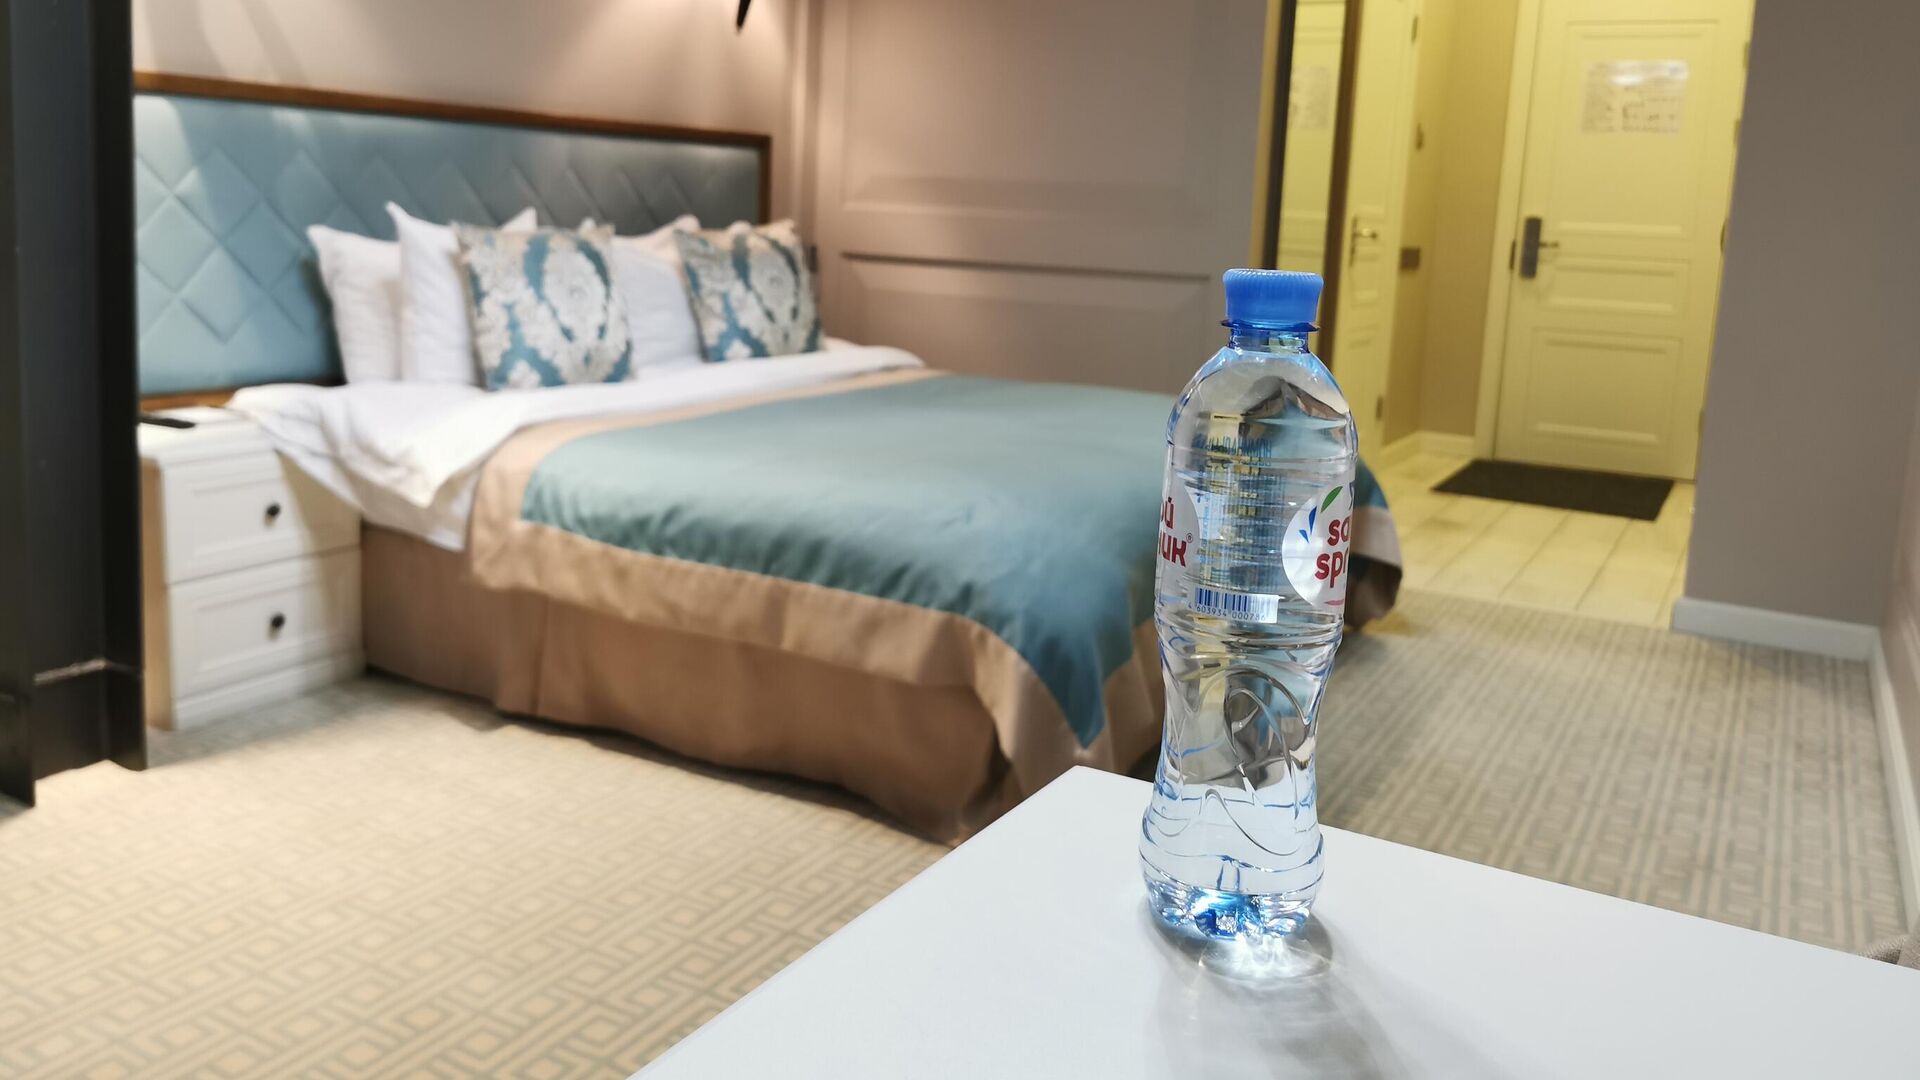 Бутылка воды на столике в номере 239 гостиницы Xander Hotel в Томске - РИА Новости, 1920, 08.10.2020